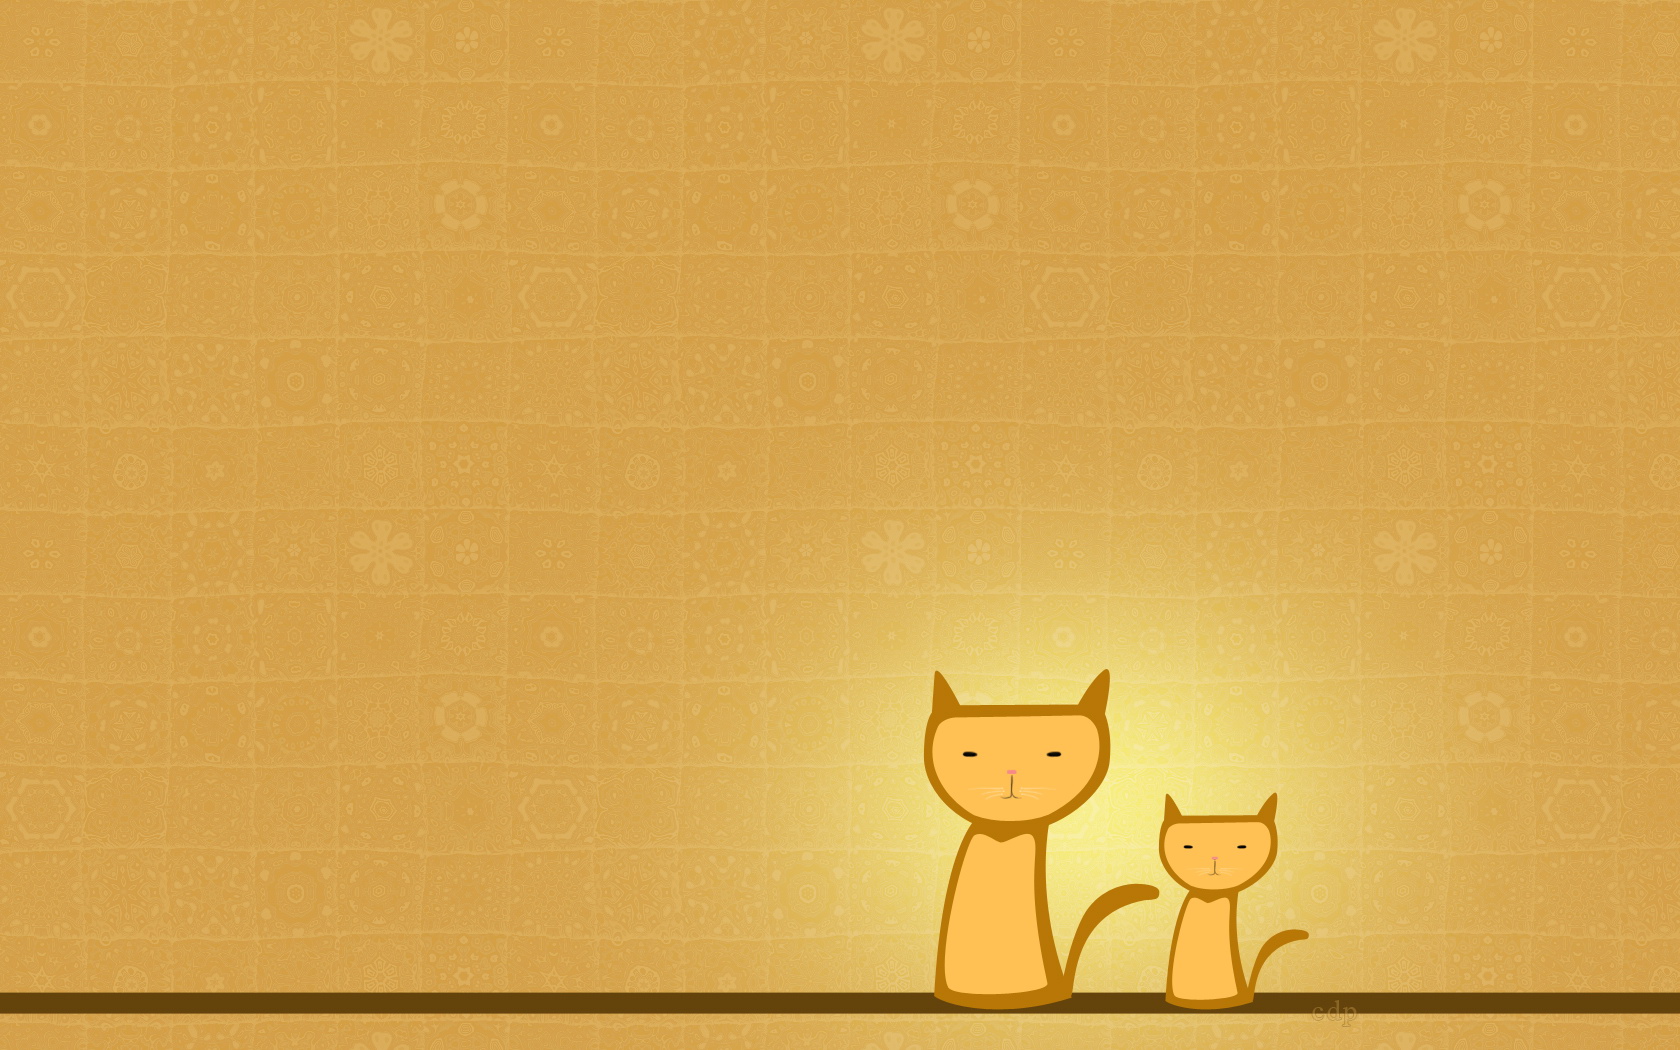 Cute kitten cartoon wallpaper comics desktop background Cartoon